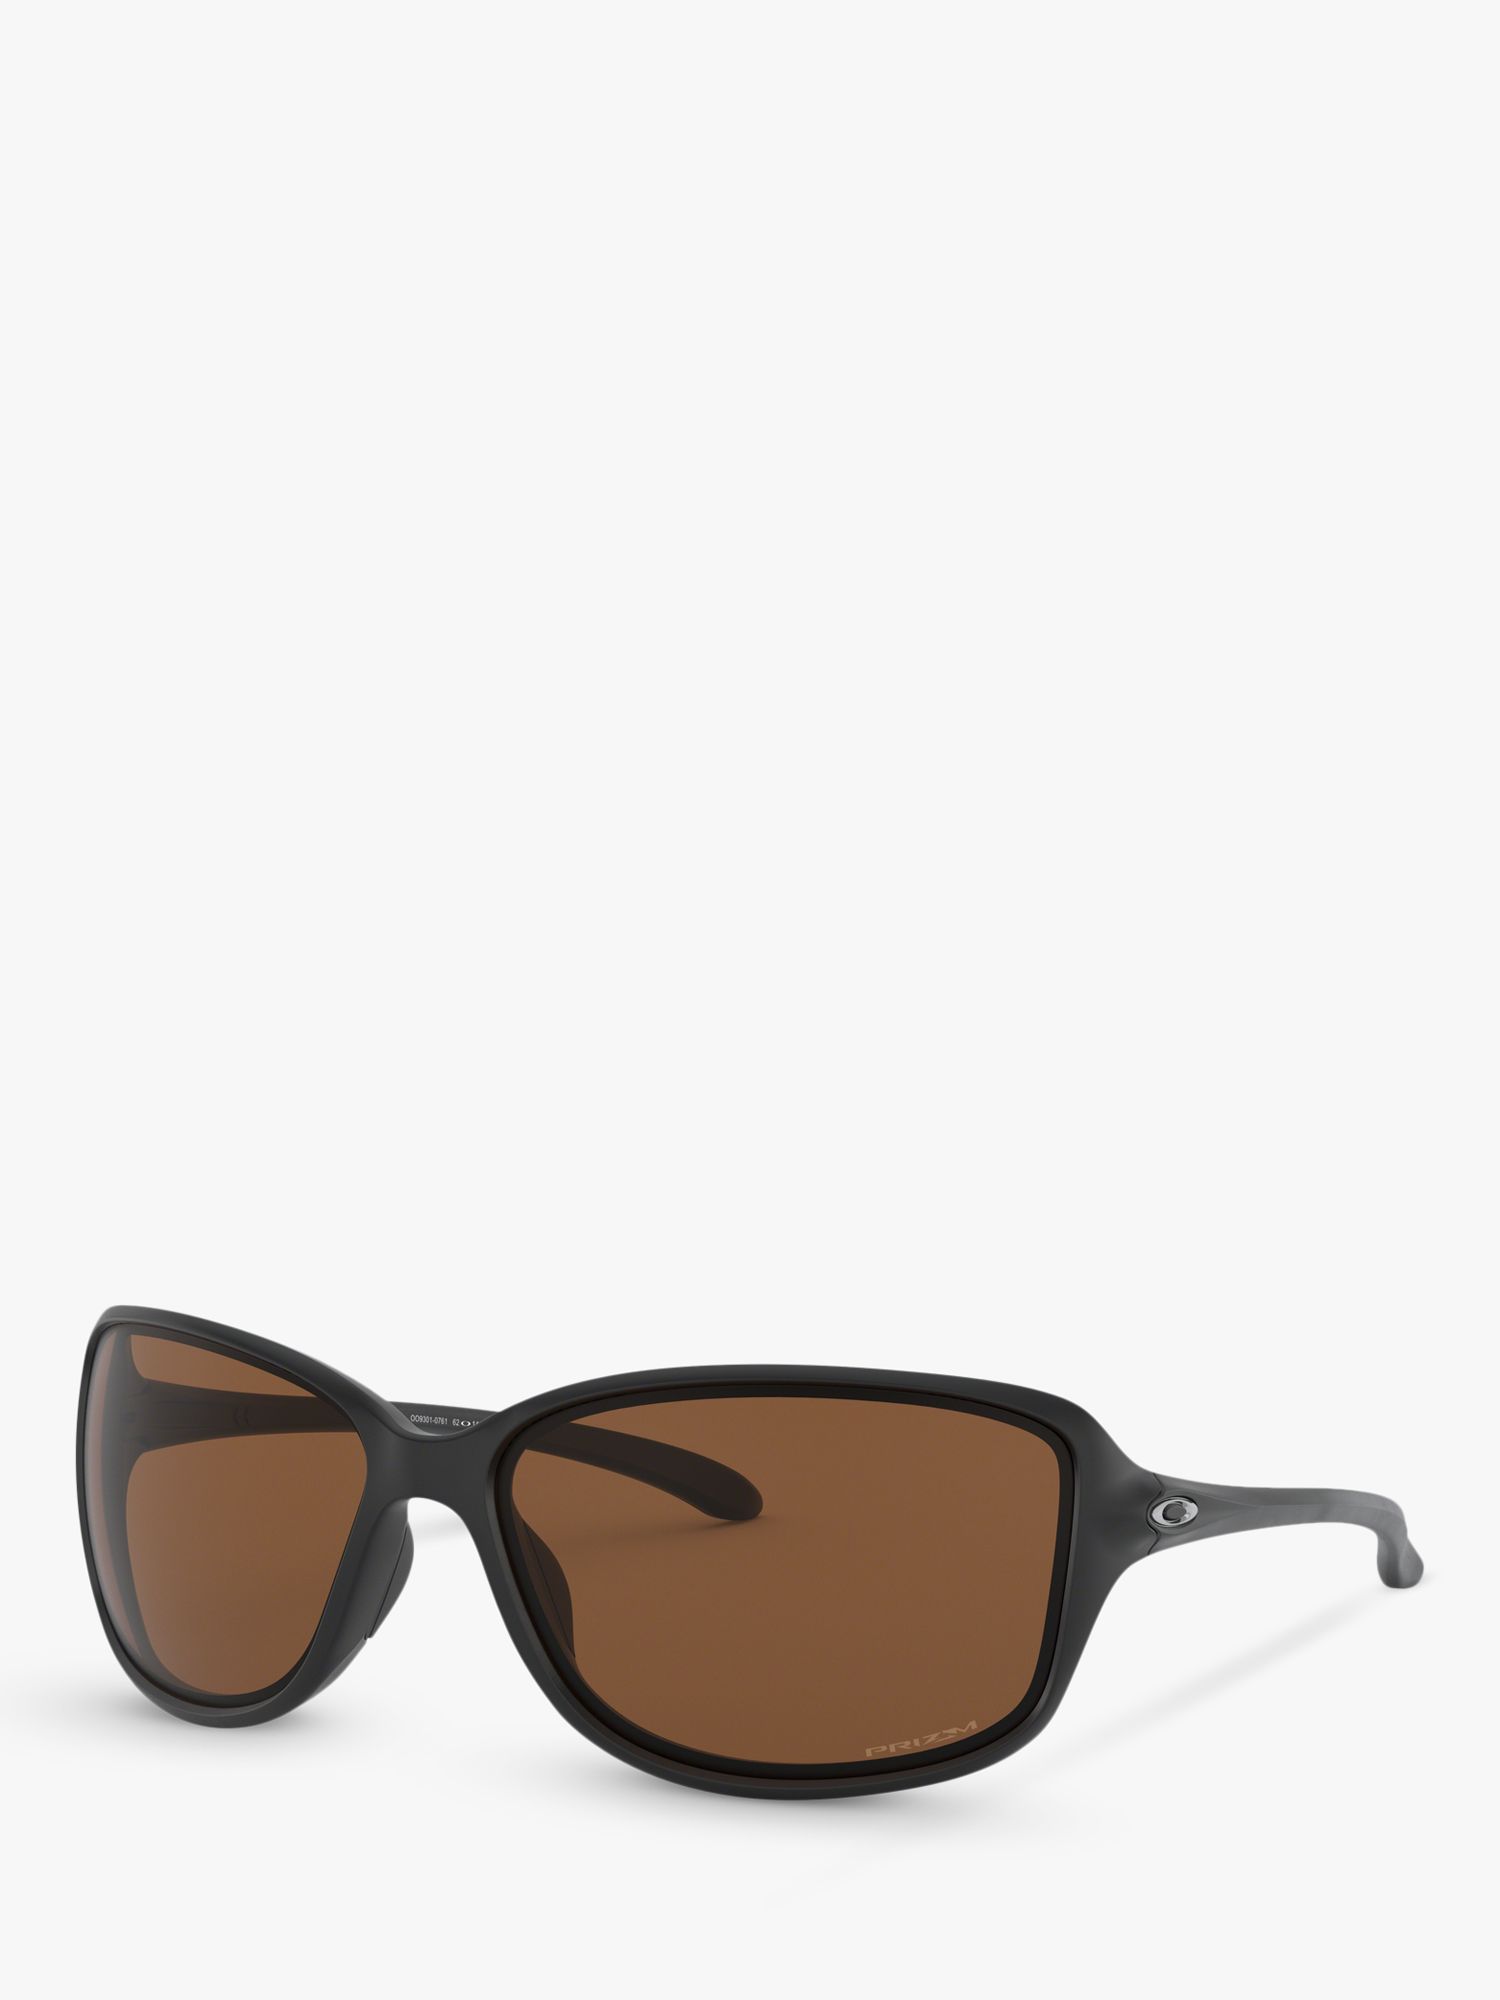 Женские поляризационные прямоугольные солнцезащитные очки Oakley OO9301 Cohort Prizm, матовый черный/коричневый поляризационные солнцезащитные очки oo9301 61 cohort oakley